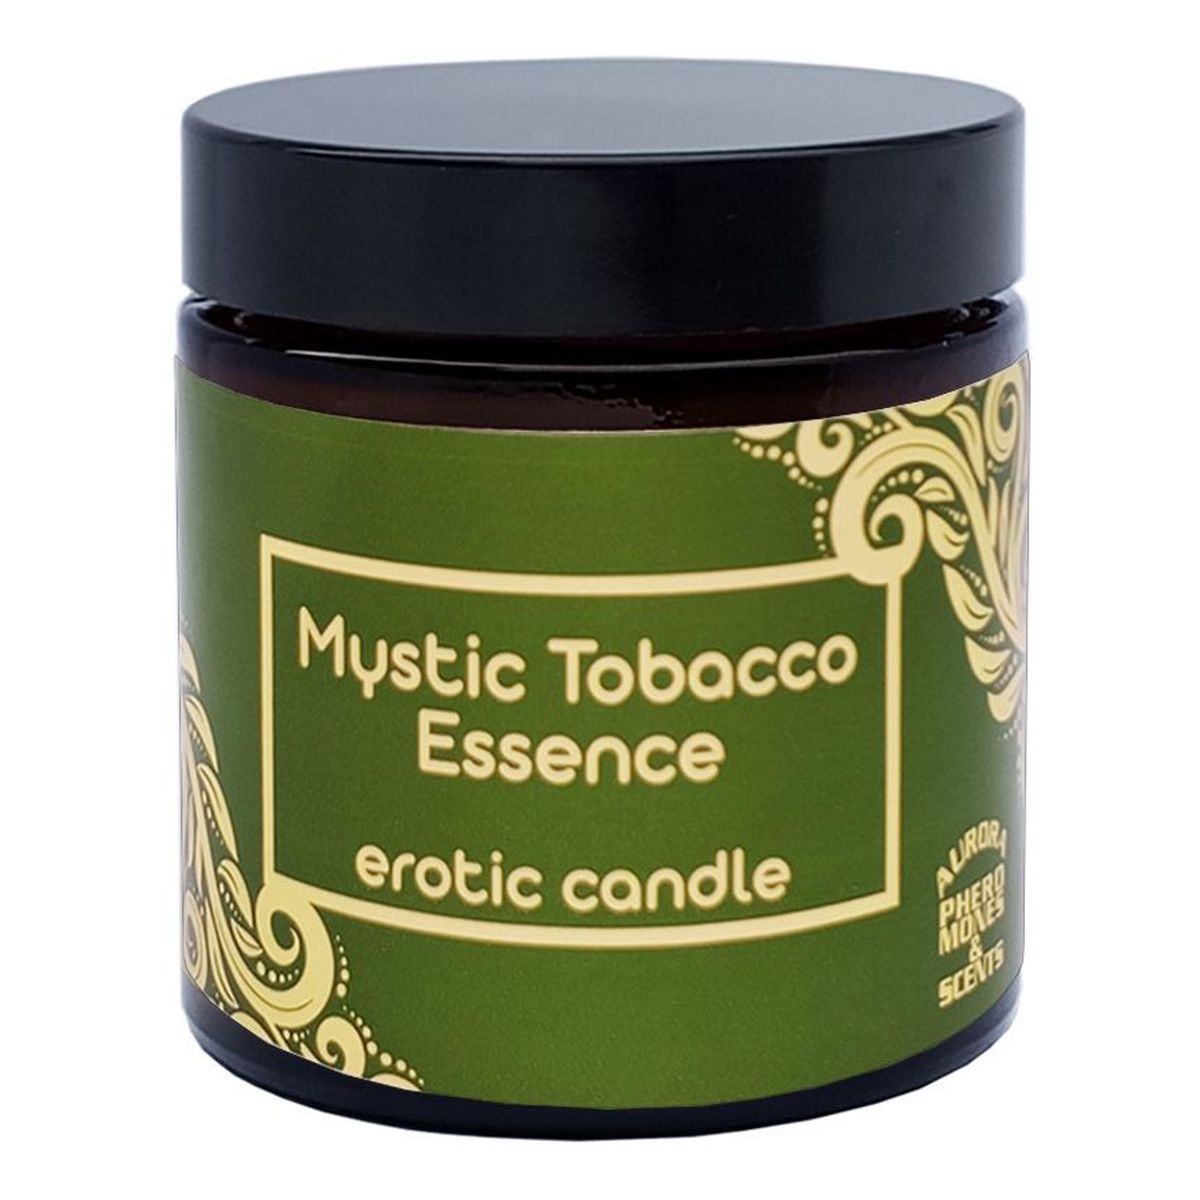 Aurora Erotic candle erotyczna świeca zapachowa mystic tobacco essence